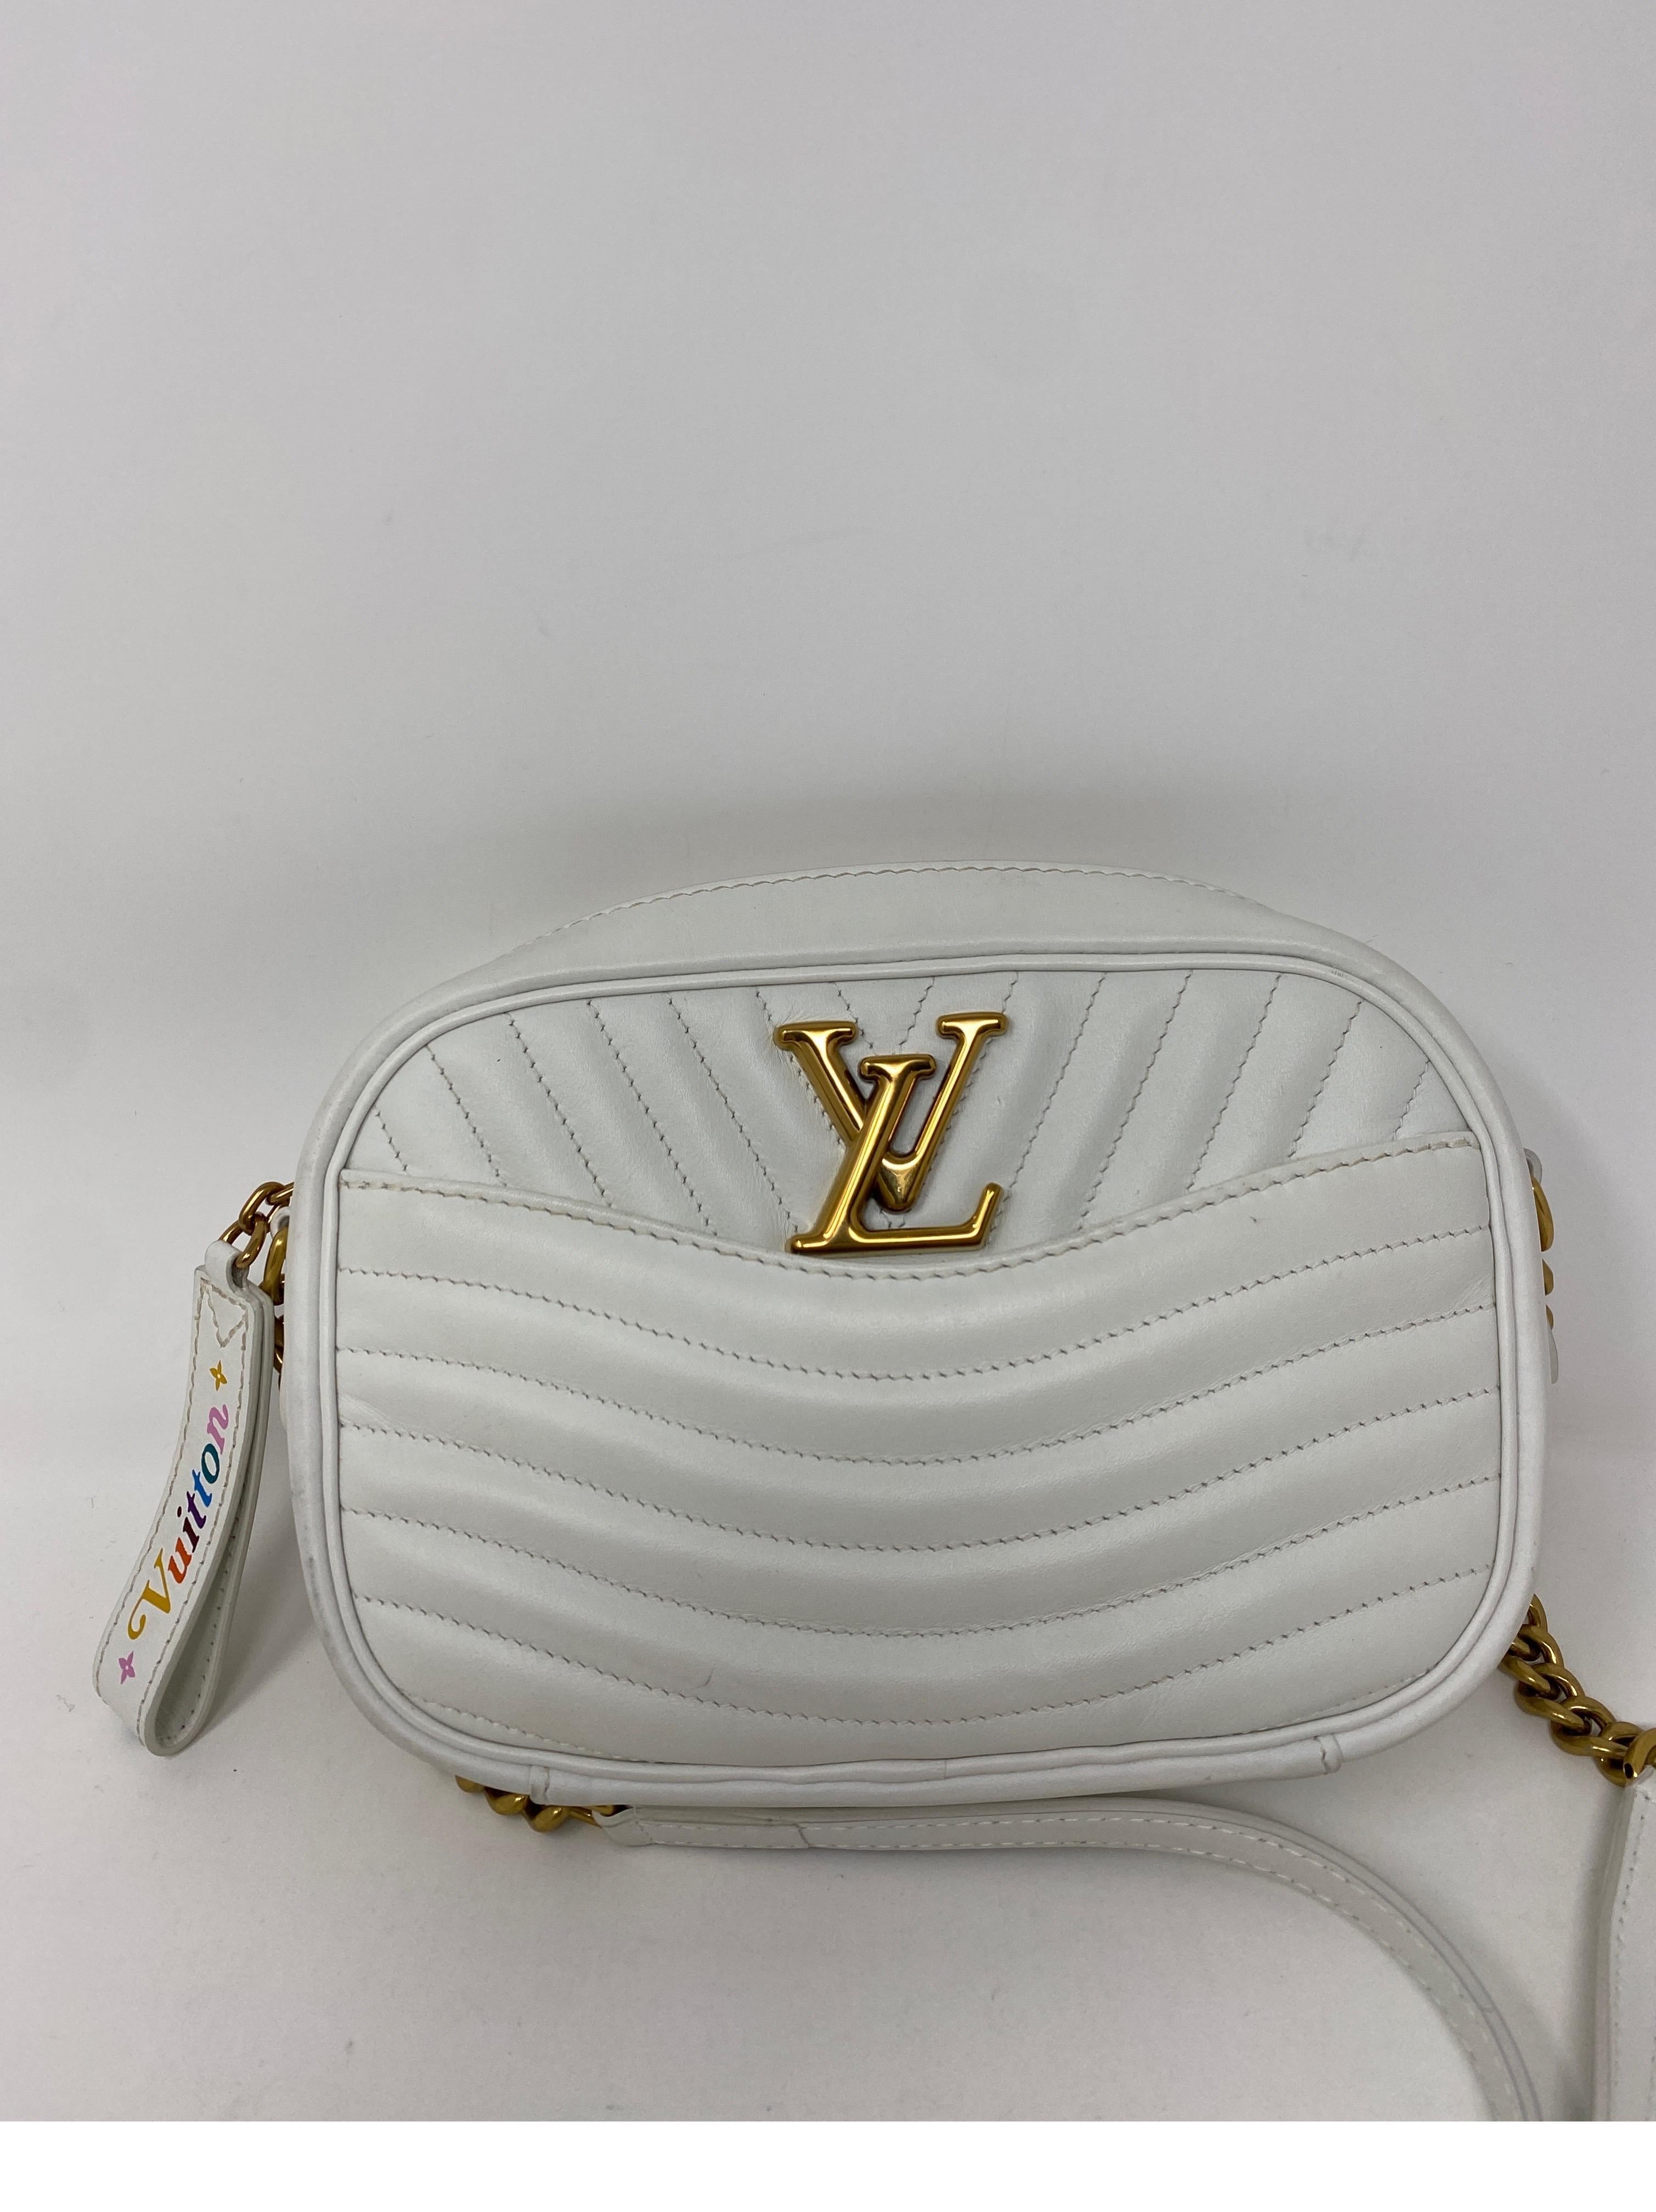 Louis Vuitton New Wave Tasche aus weißem Kalbsleder. Kameratasche mit goldener Hardware. Schöne Umhängetasche. Außen guter Zustand. Leichte Flecken in der Tasche durch normales Tragen. Bitte siehe Fotos. Garantiert echt.